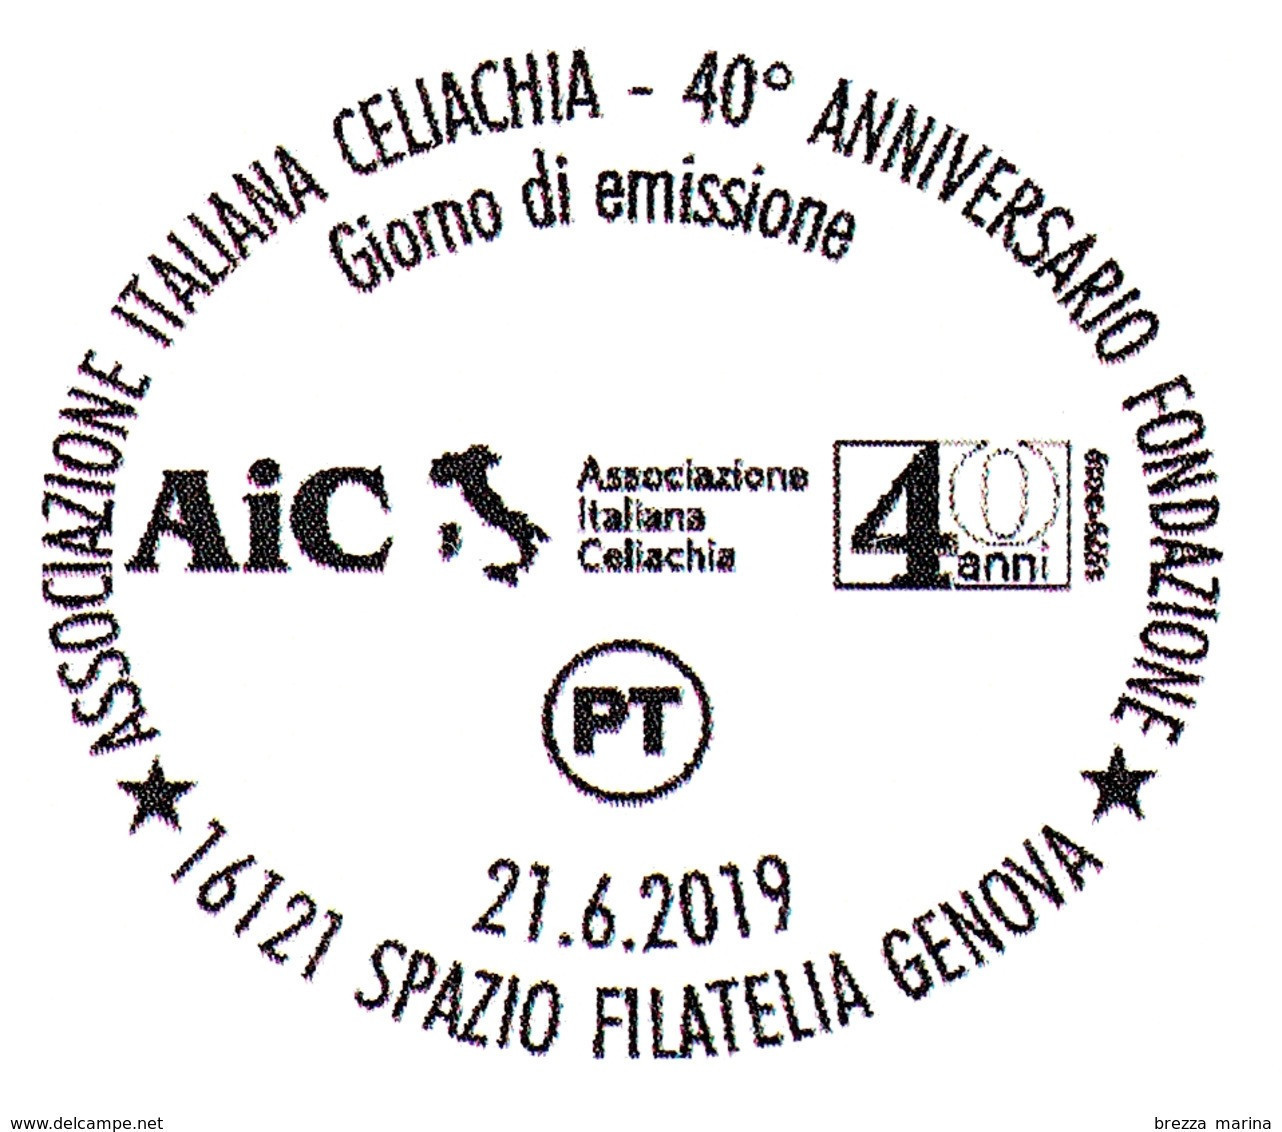 ITALIA - Usato - 2019 - 40 Anni Dell’AIC – Associazione Italiana Celiachia – Figure - B - 2011-20: Afgestempeld